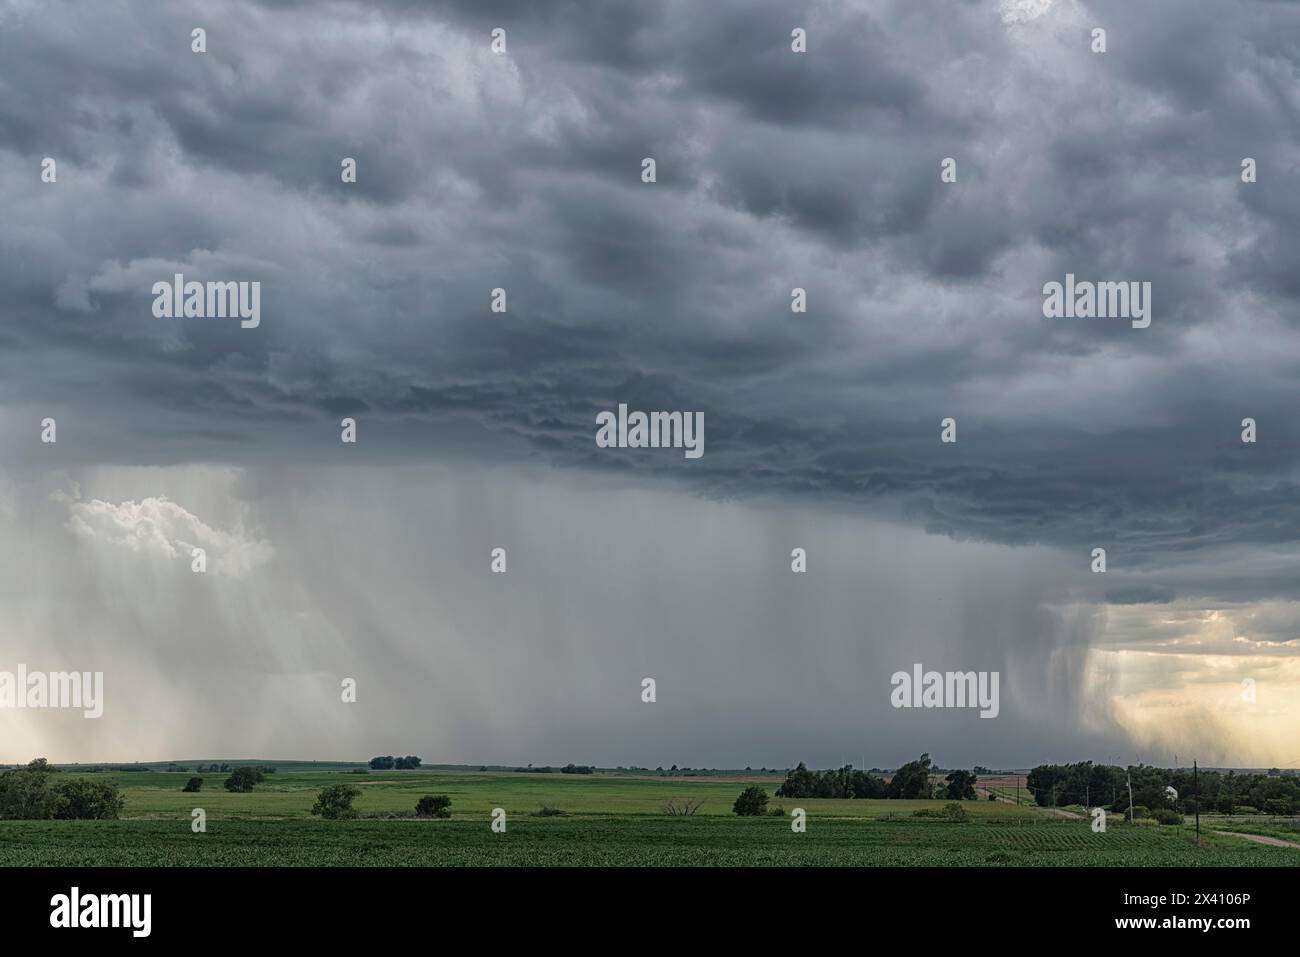 De fortes pluies provenant d'un orage supercellulaire dans les régions rurales des États-Unis ; McCook, Nebraska, États-Unis d'Amérique Banque D'Images